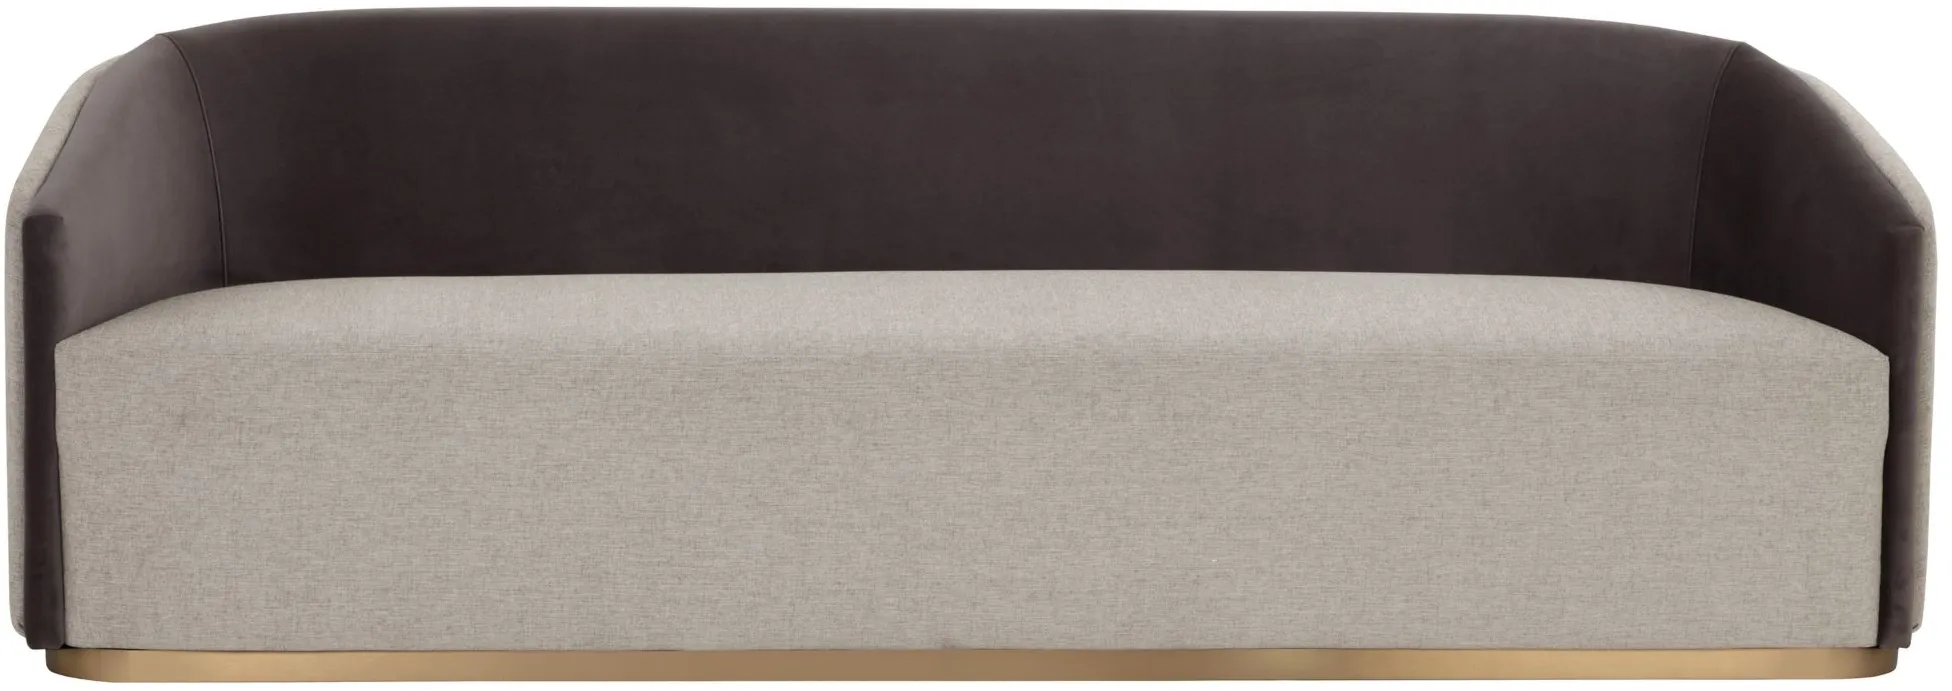 Sheva Sofa in Ernst Sandstone by Sunpan